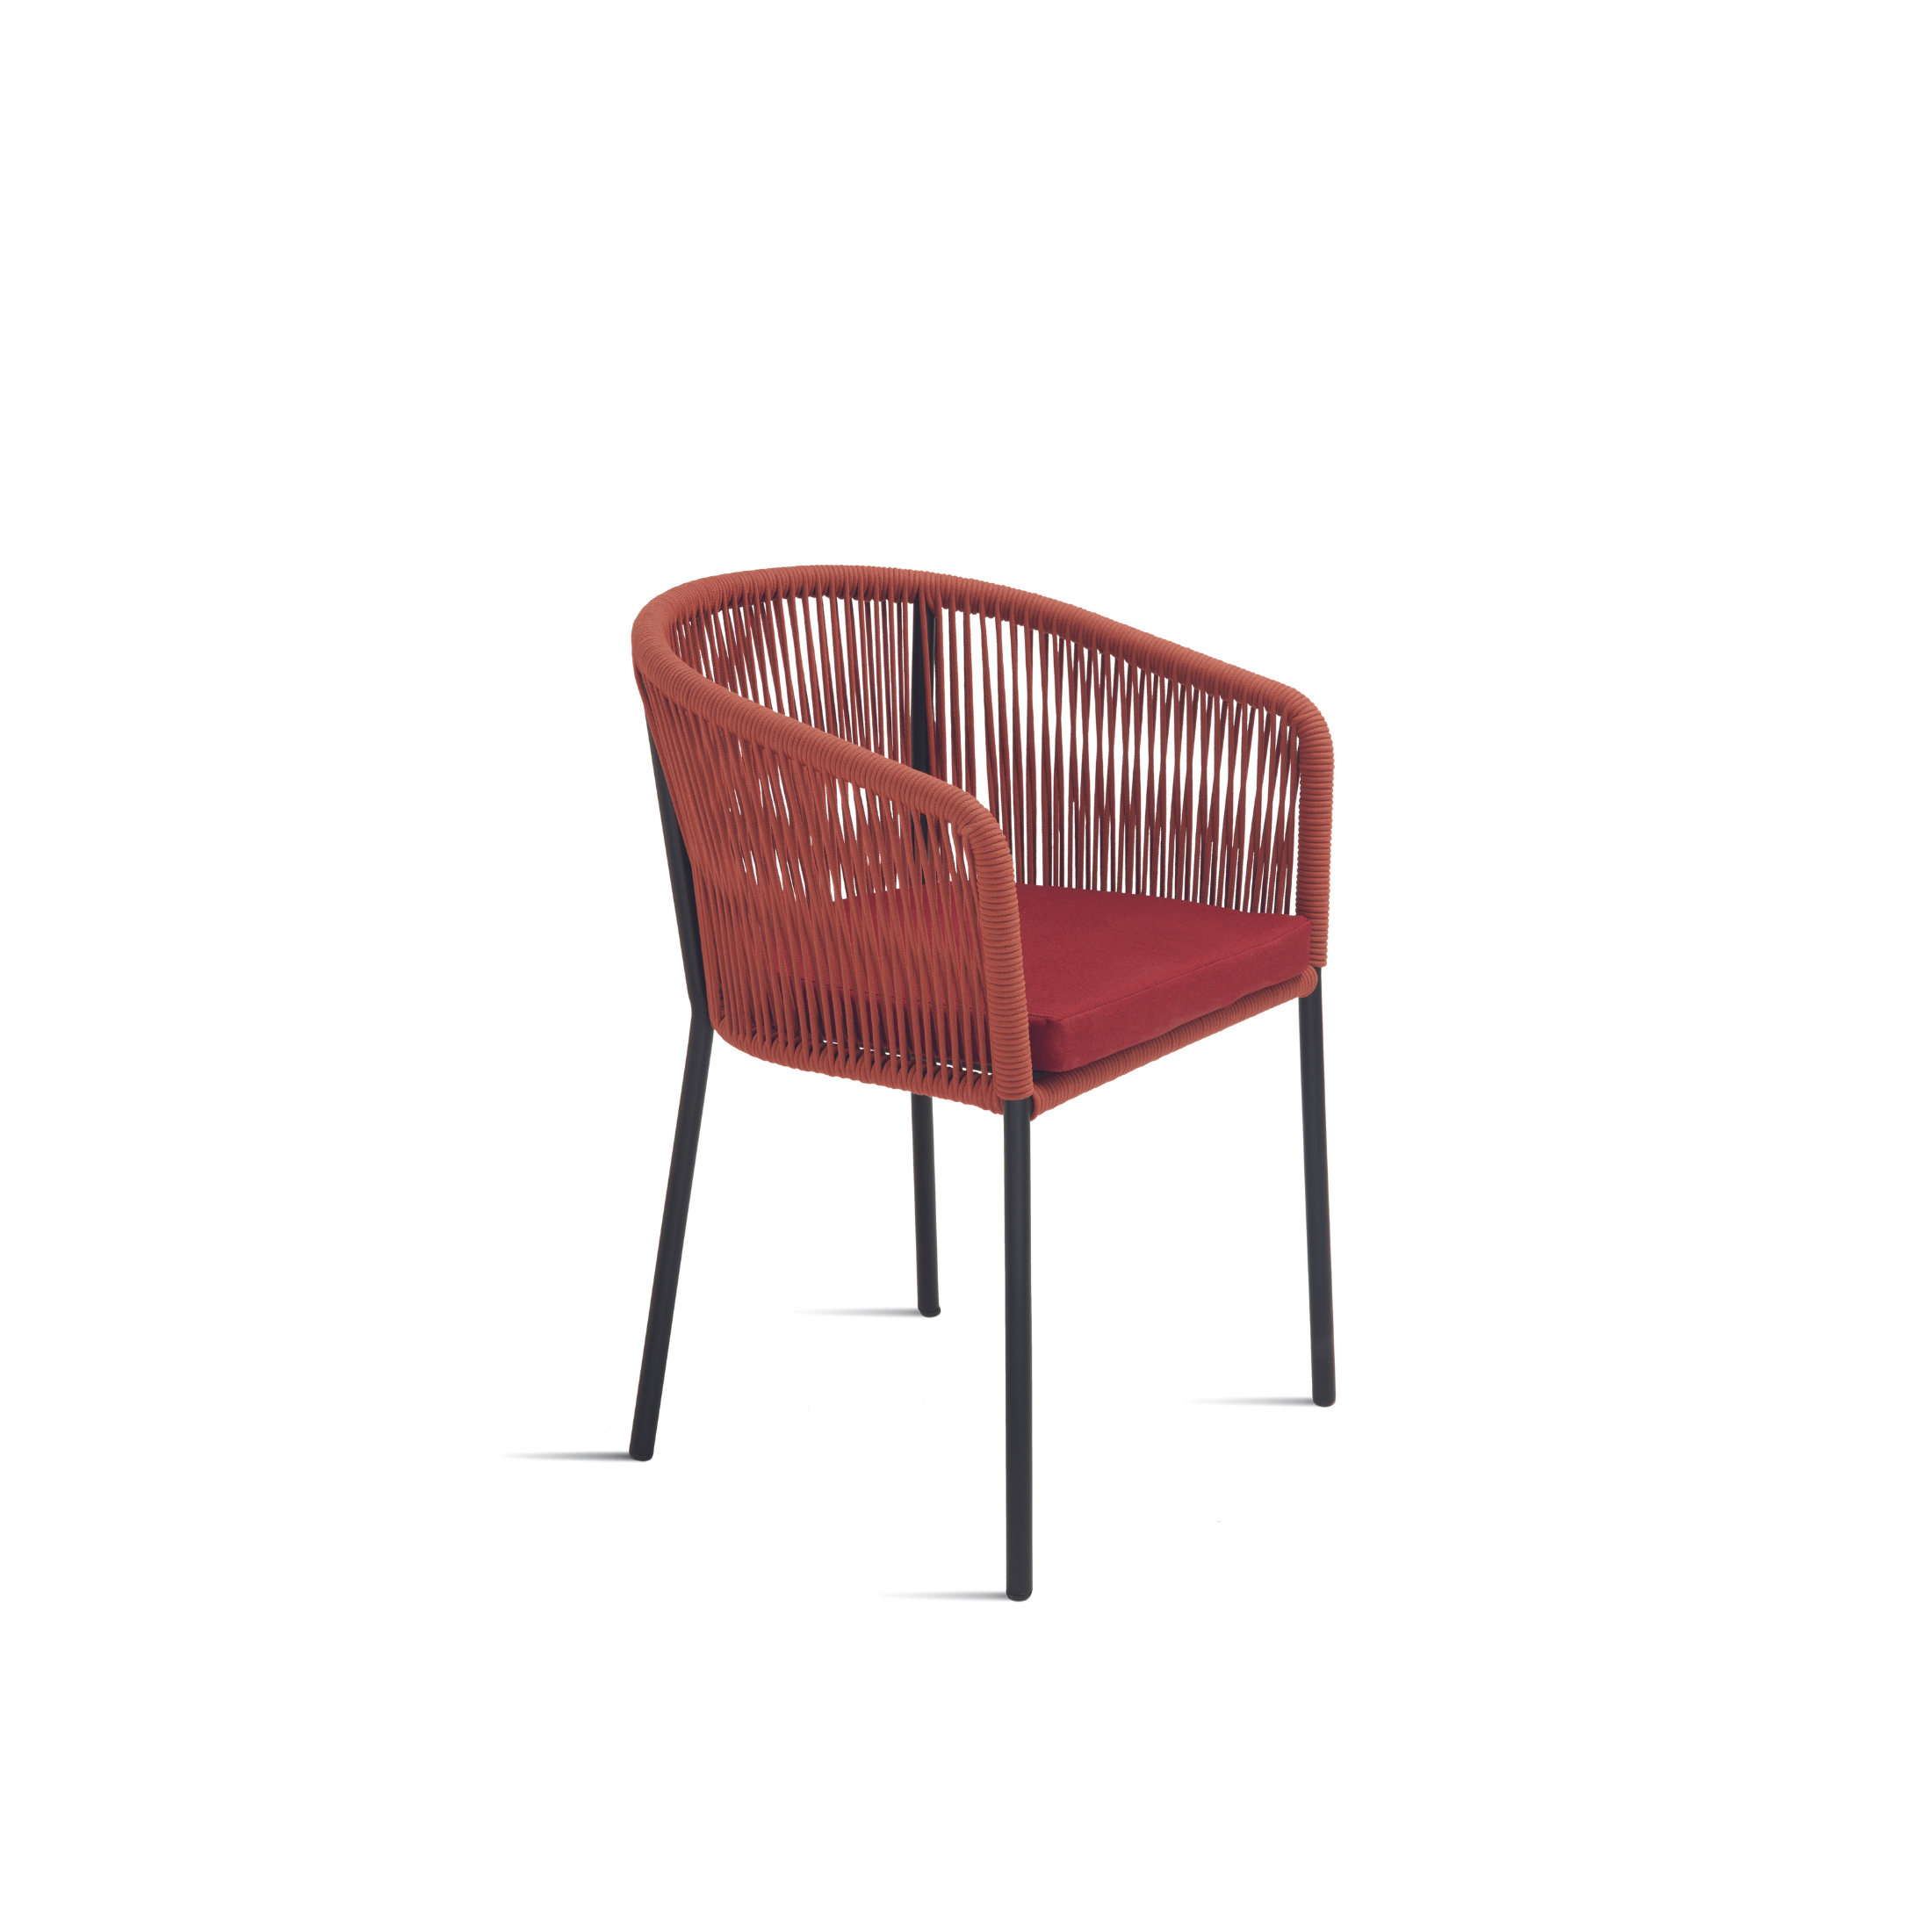 Chaise moderne en corde "Joan" assise rembourrée pour salon 55x56 h78 cm